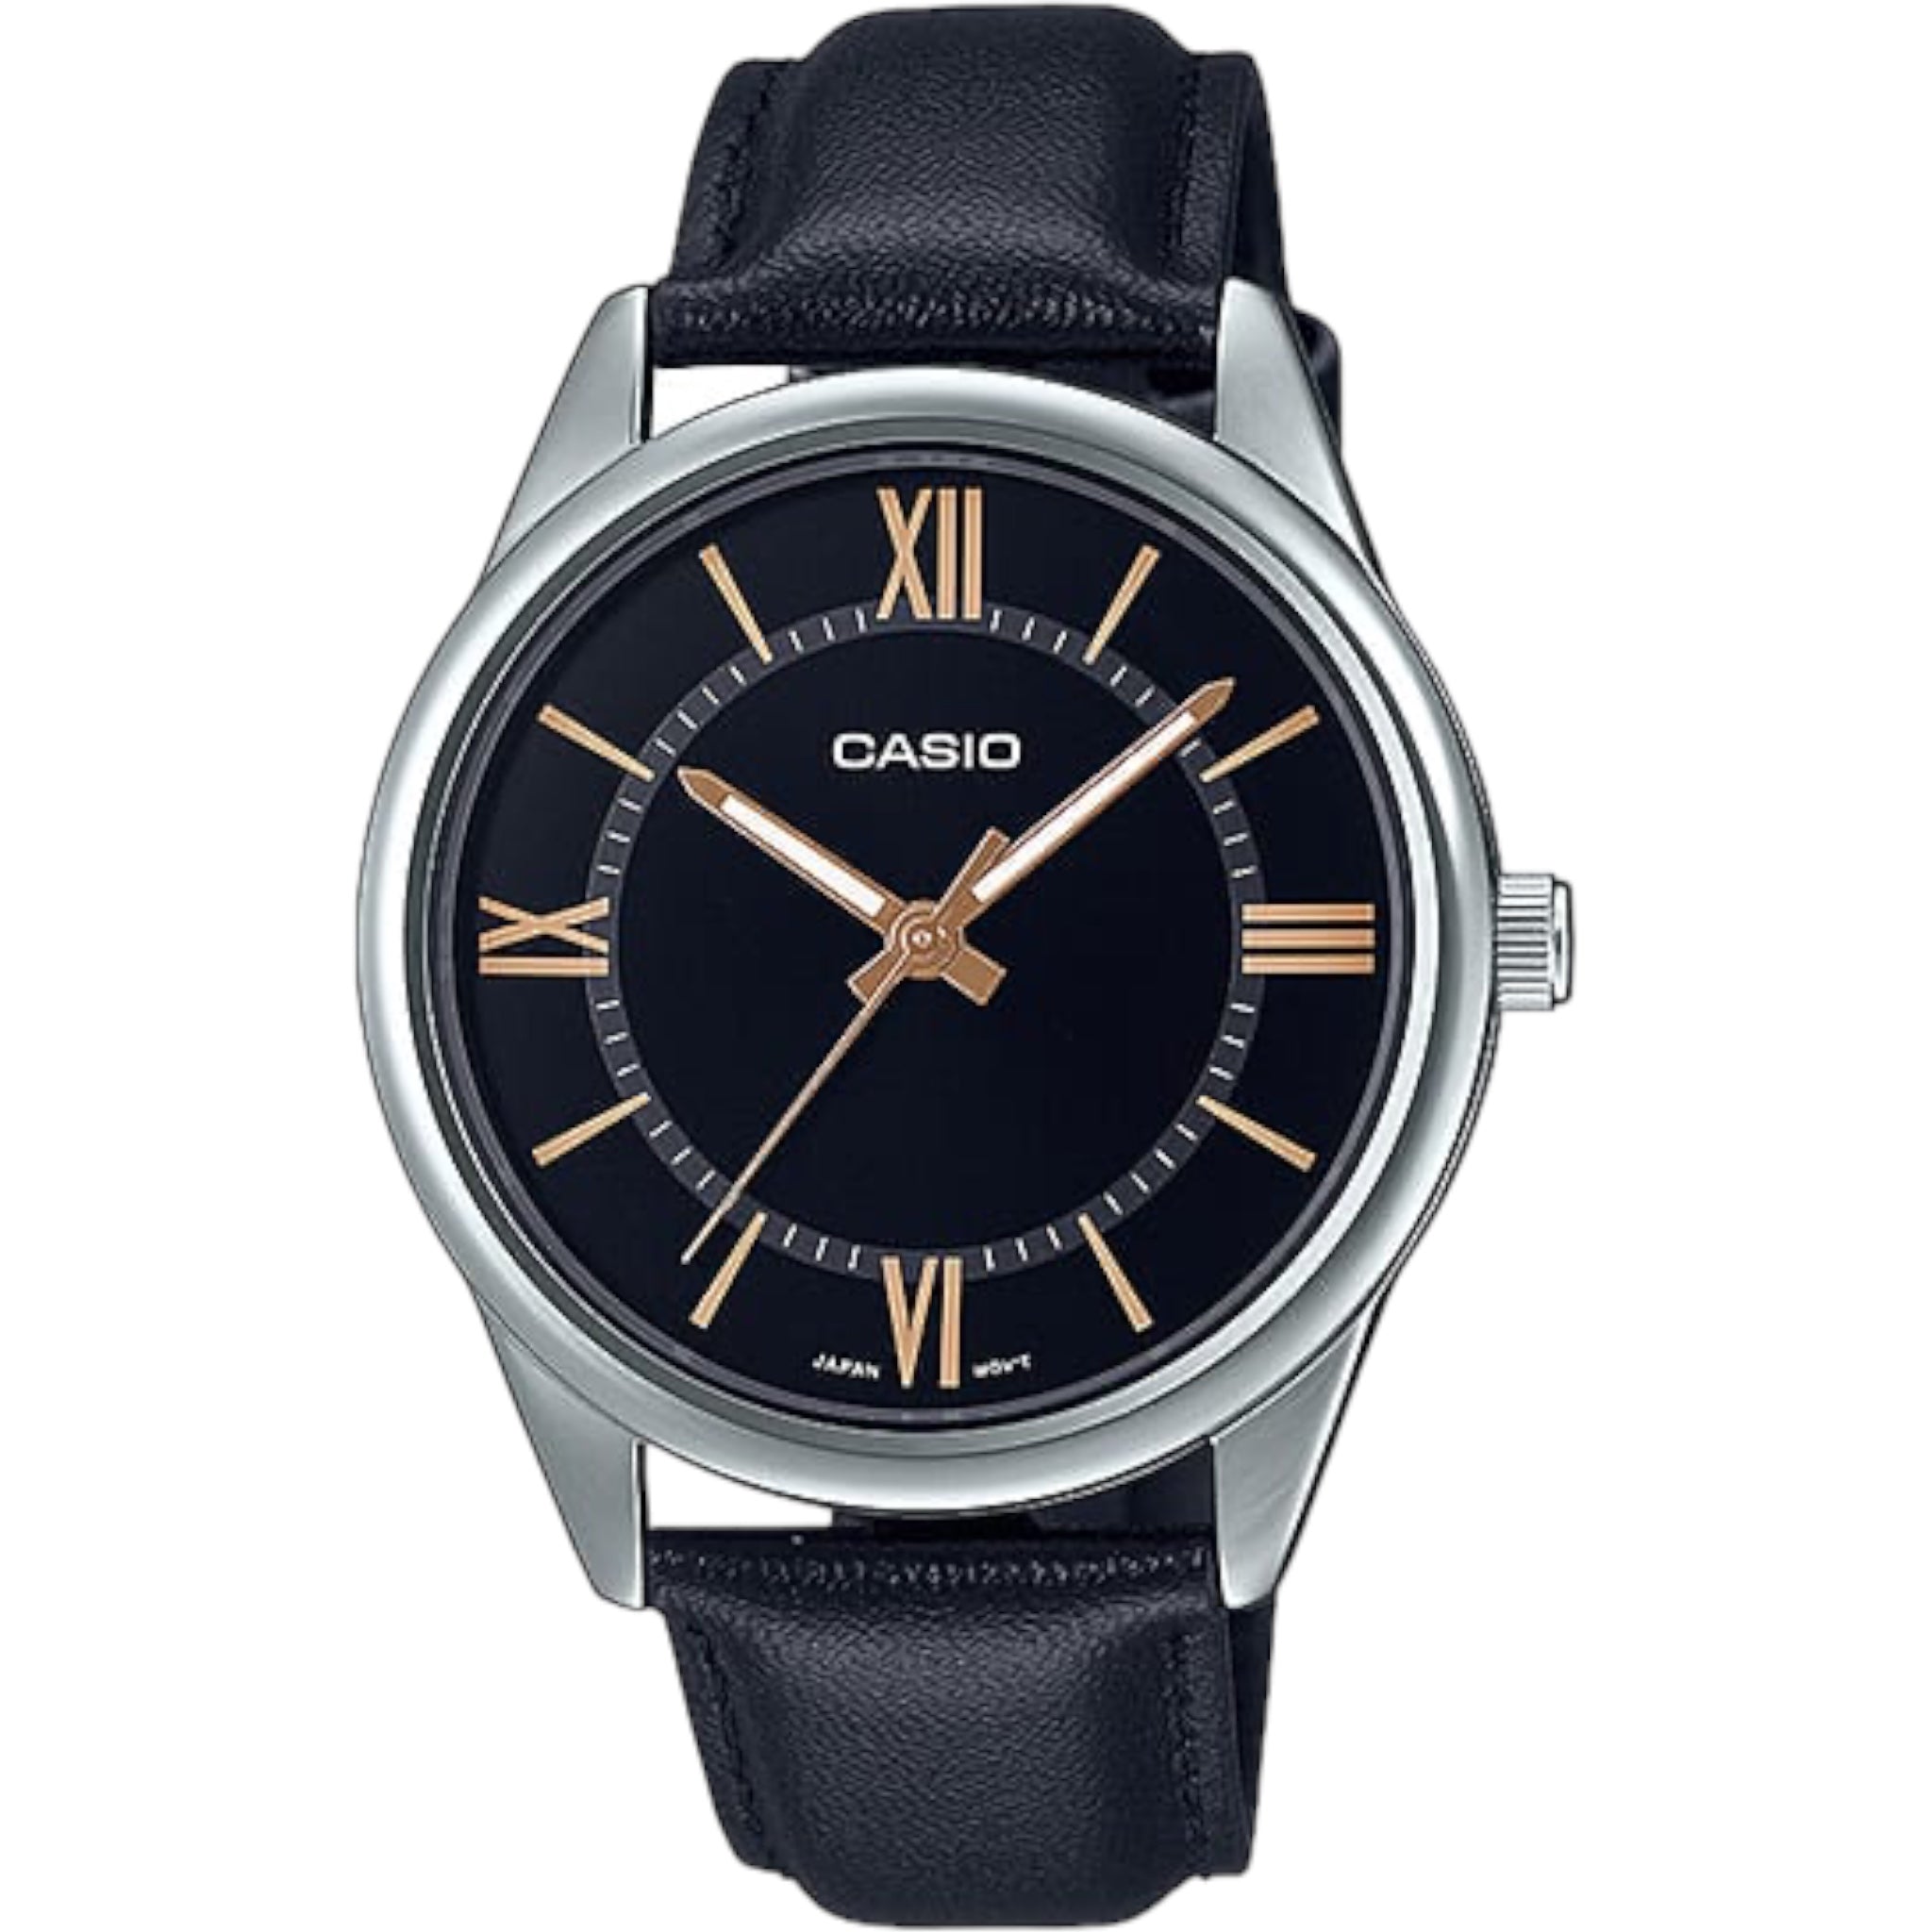 Casio Men's Watch MTP-V005L-1B5